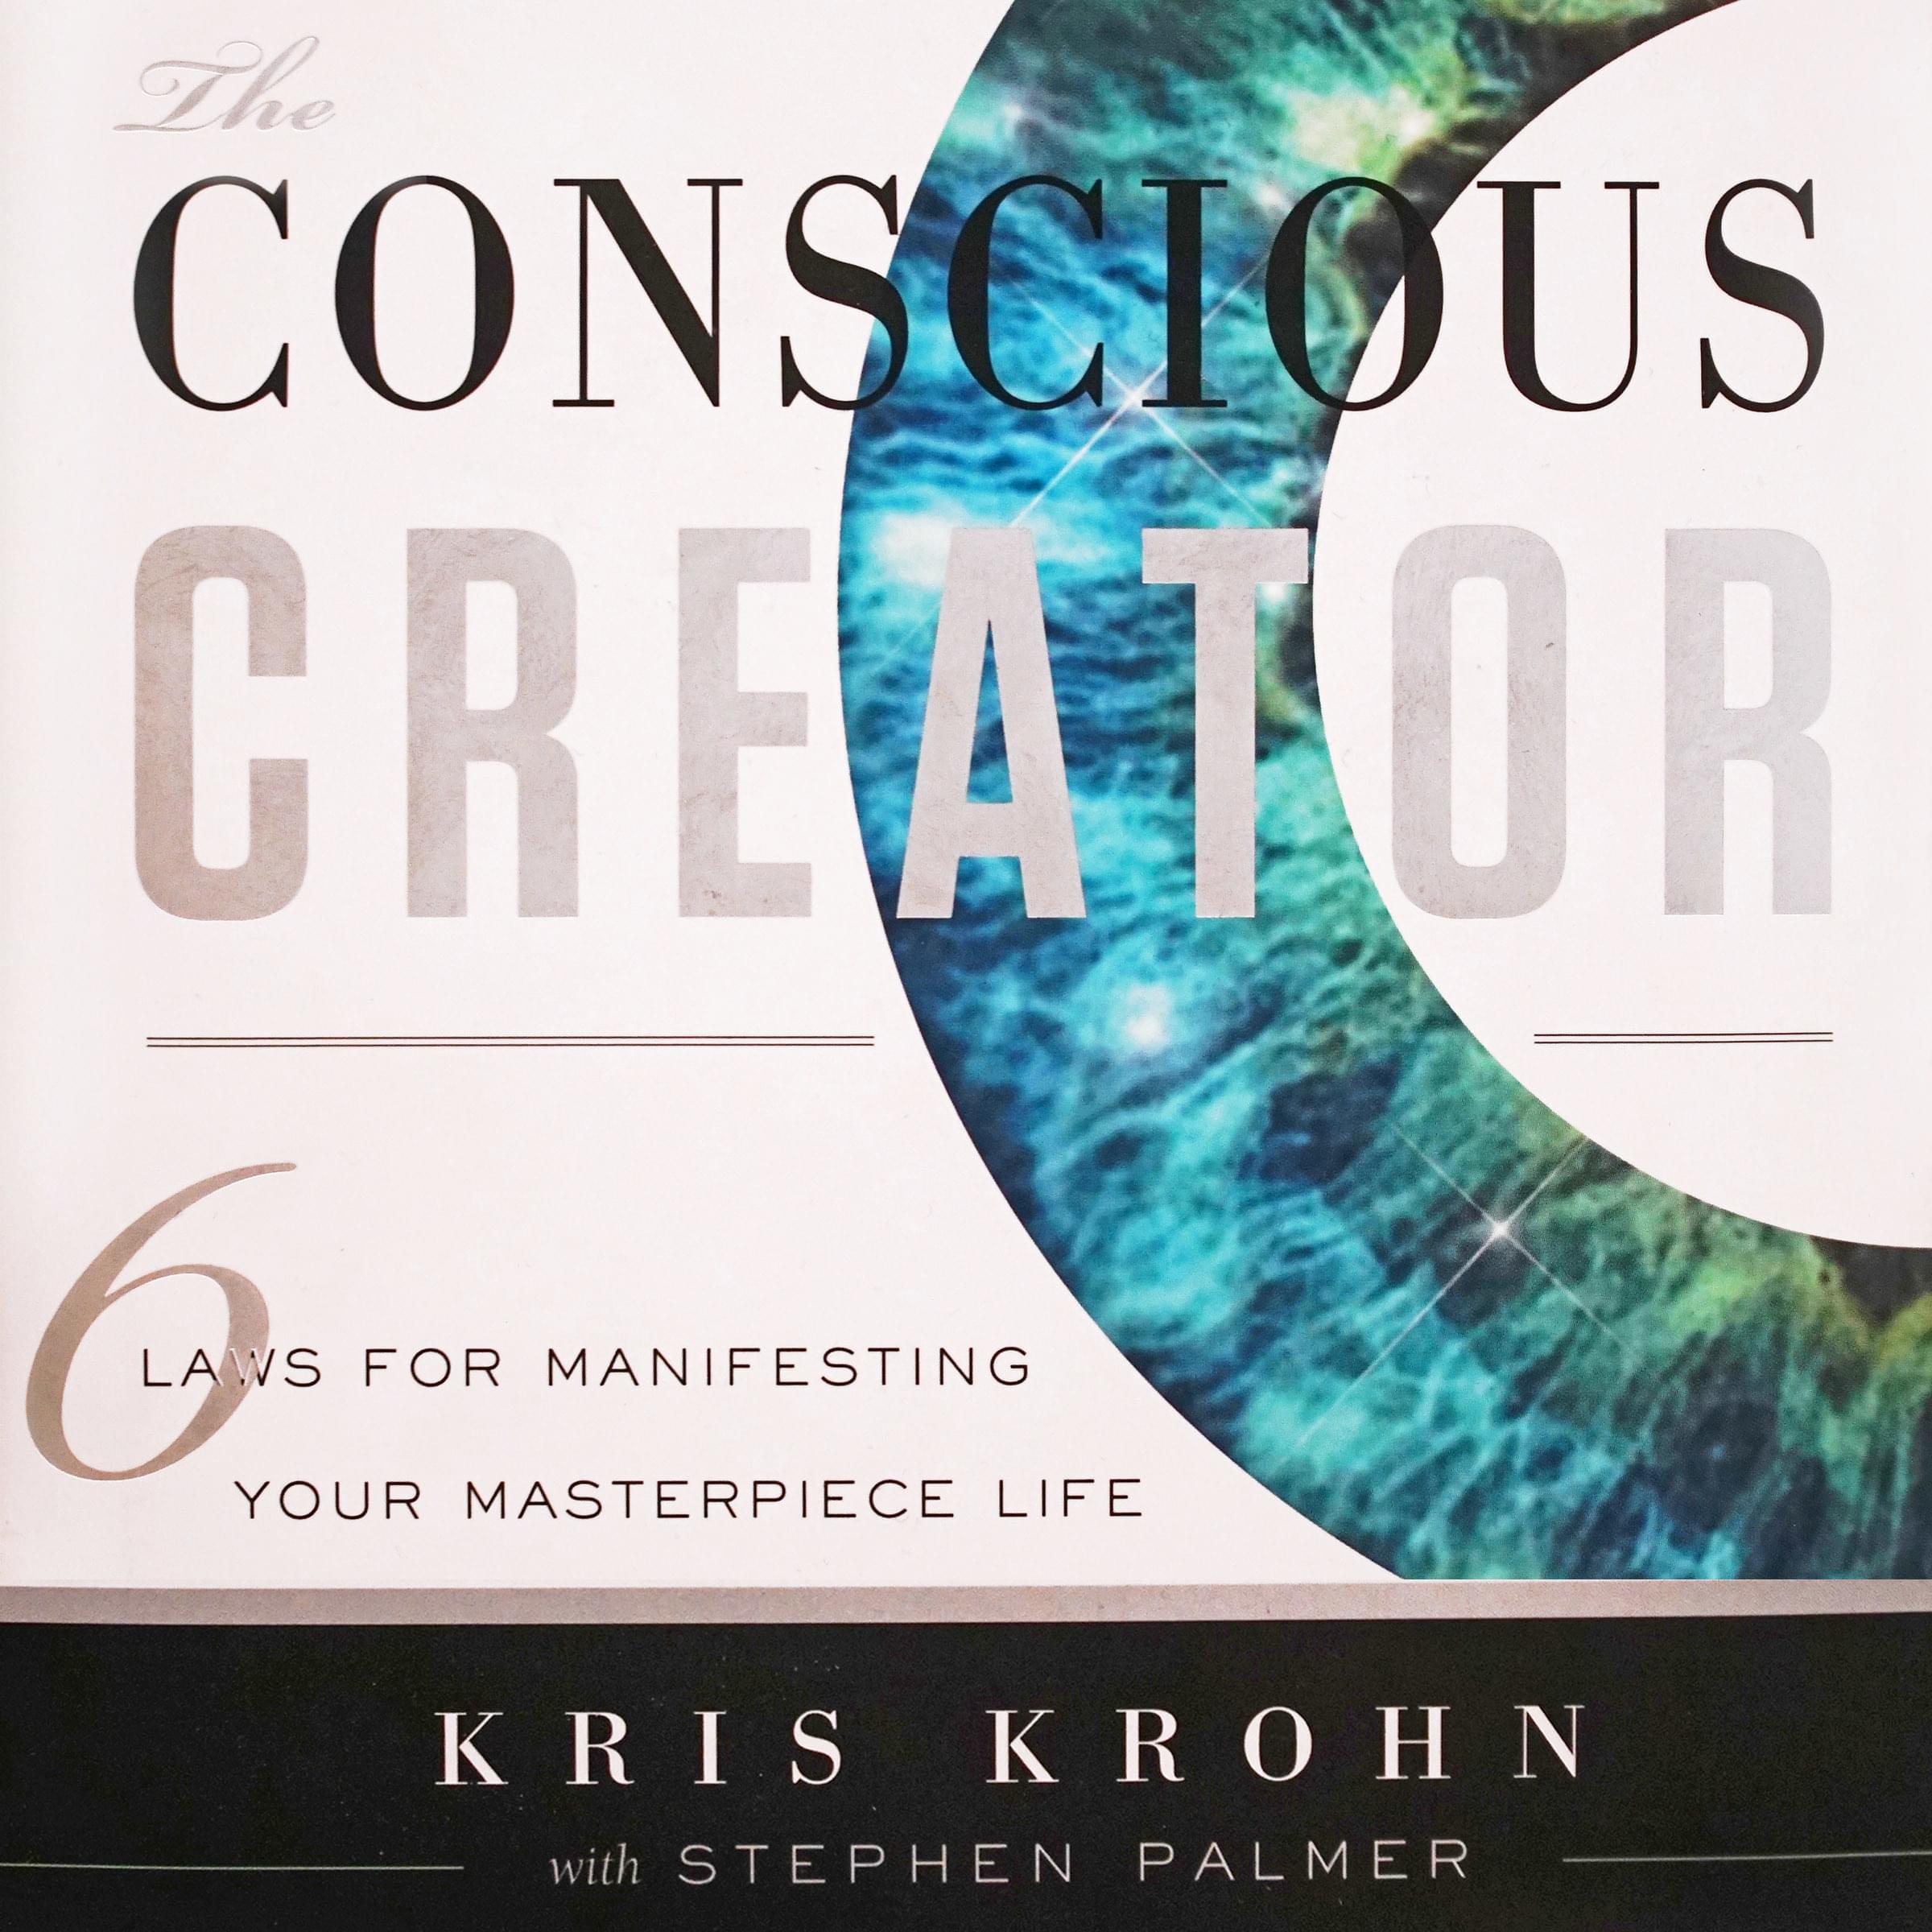 Conscious Creator audio book